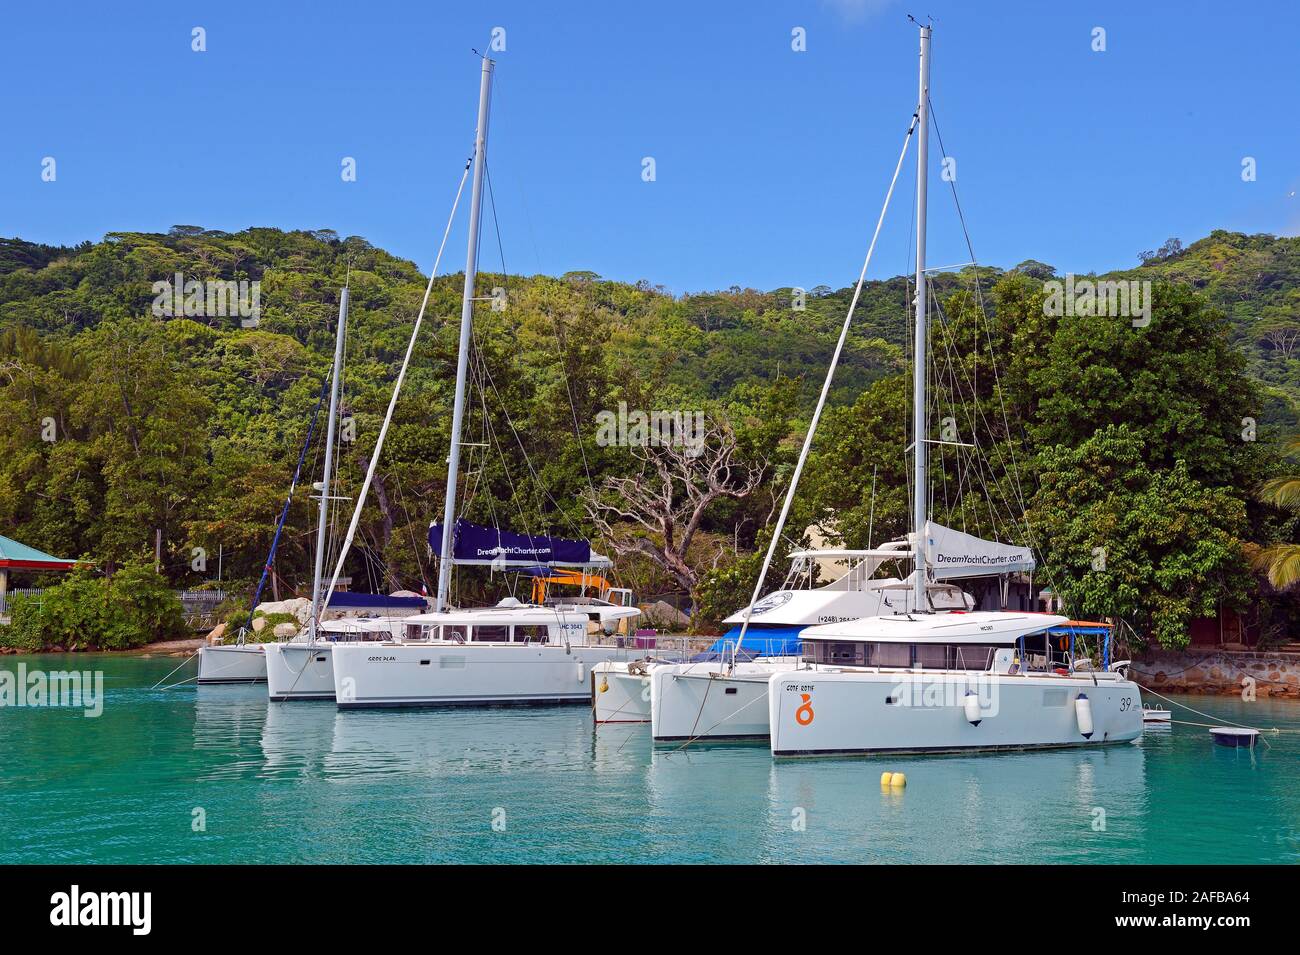 Segelboote zur Vermietung im Hafen, Jetty der Insel La Digue, Seychellen Stock Photo